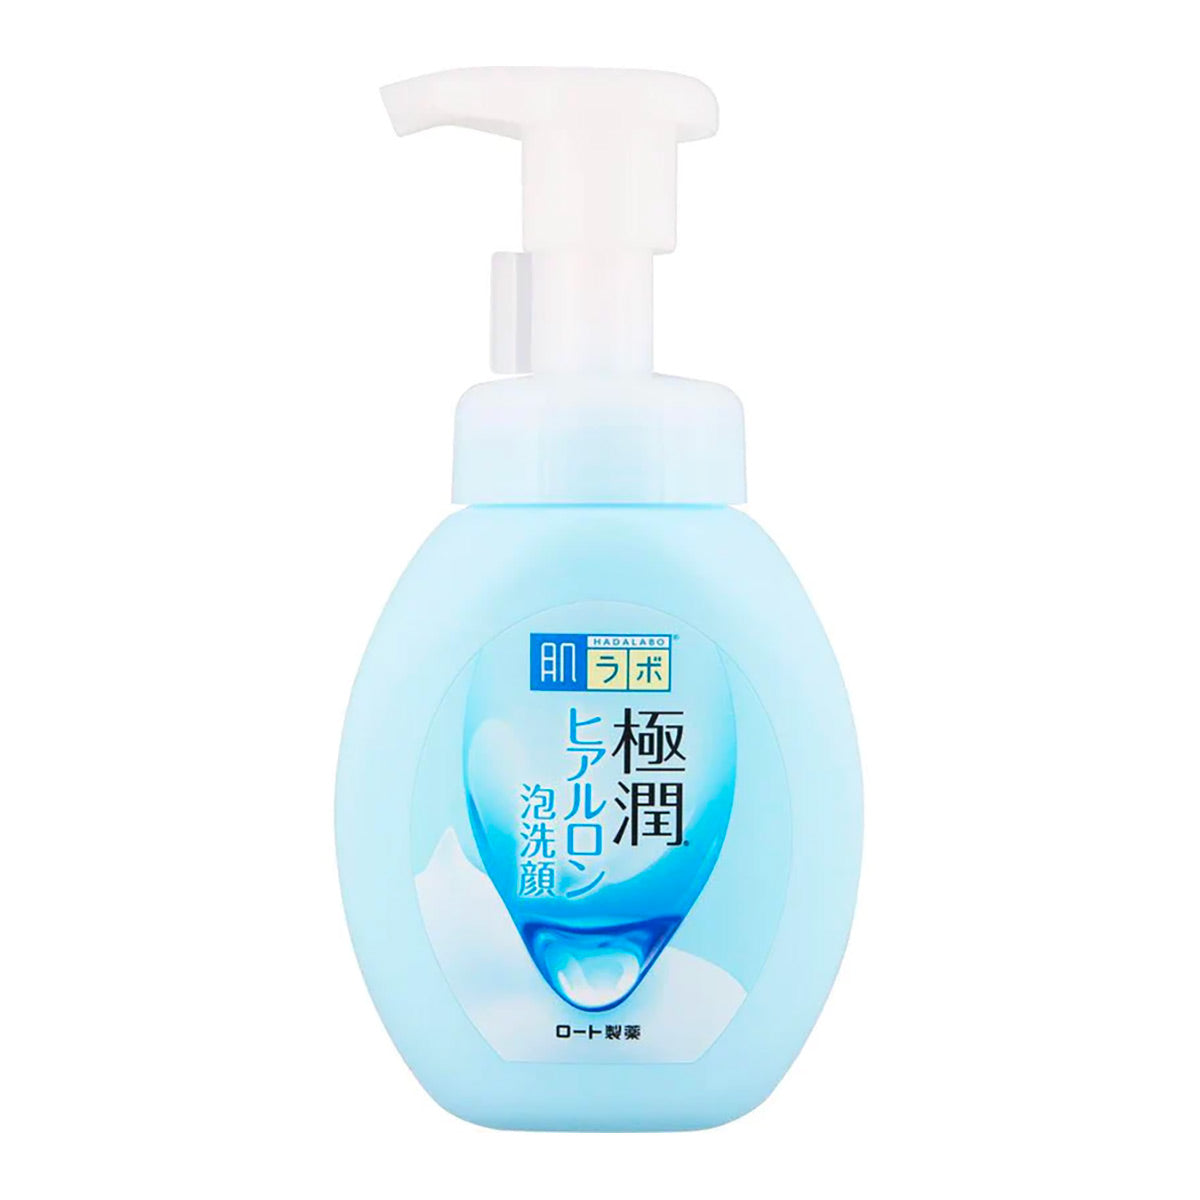 Hada Labo Gokujyun Hyaluronic Acid Face Foam Wash 160 ml